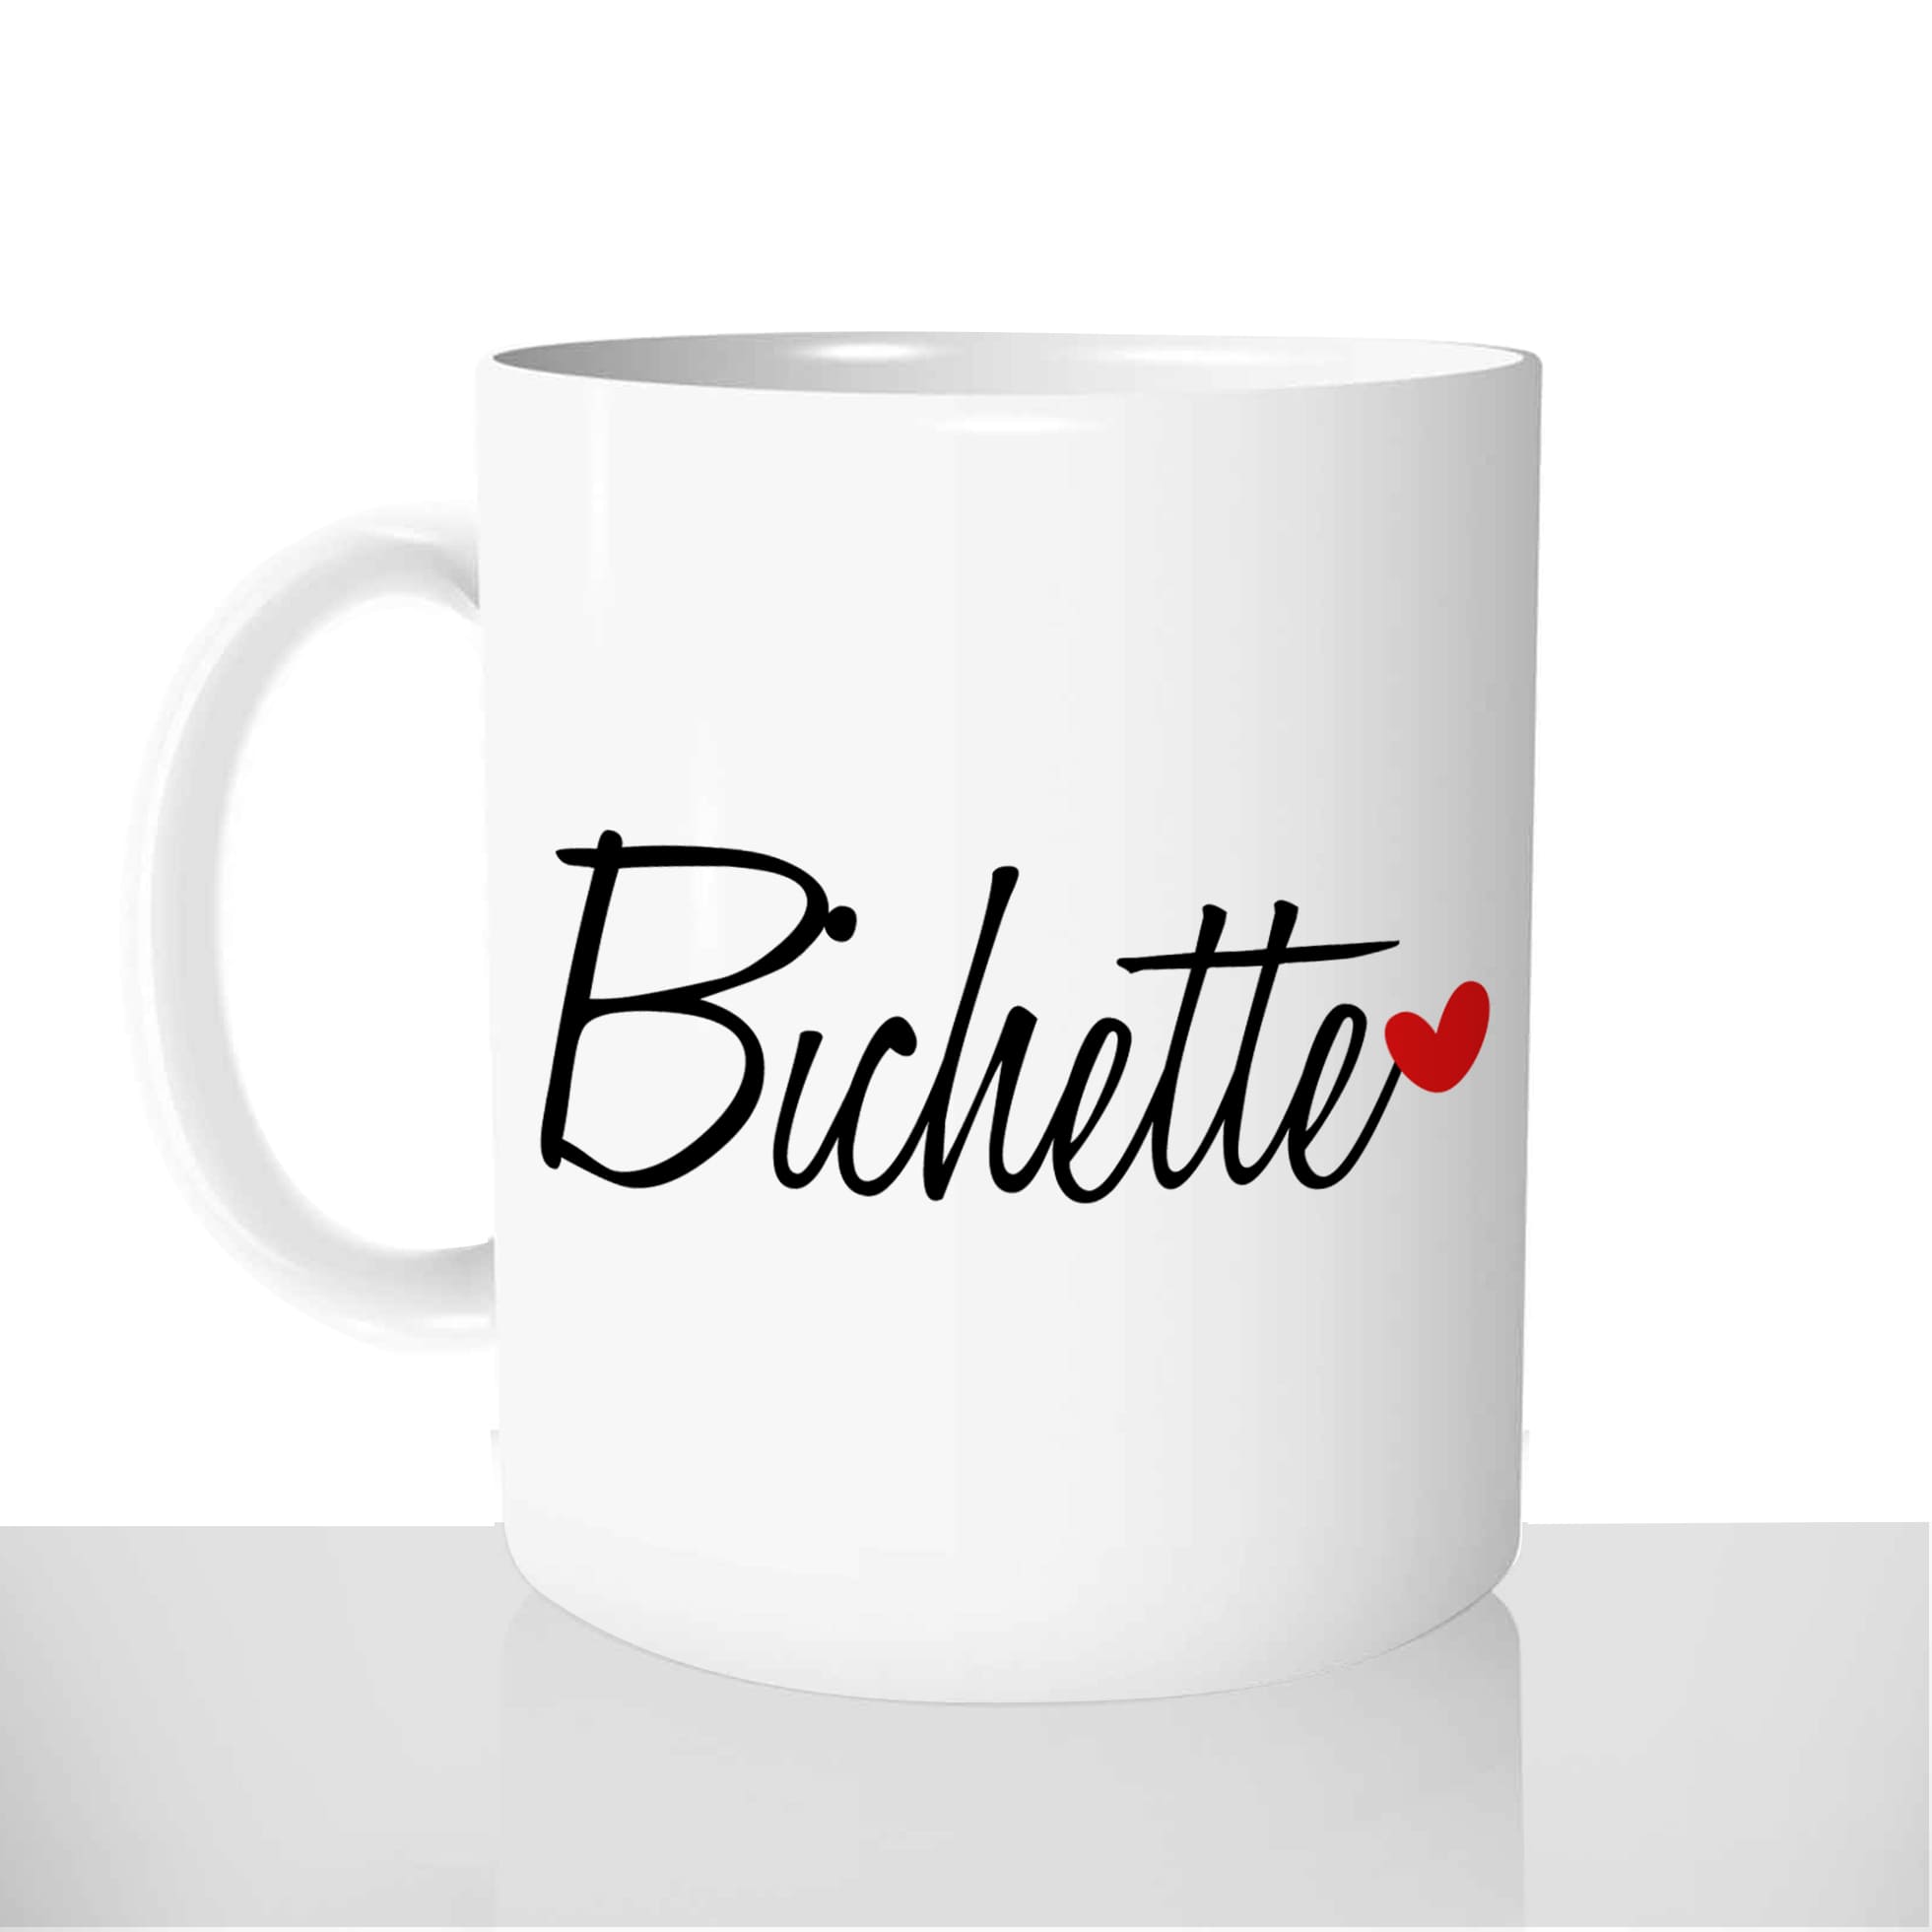 mug-blanc-céramique-personnalisable-tasse-11oz-Bichette-biche-coeur-amour-couple-collègue-personnalisé-fun-idée-cadeau-original